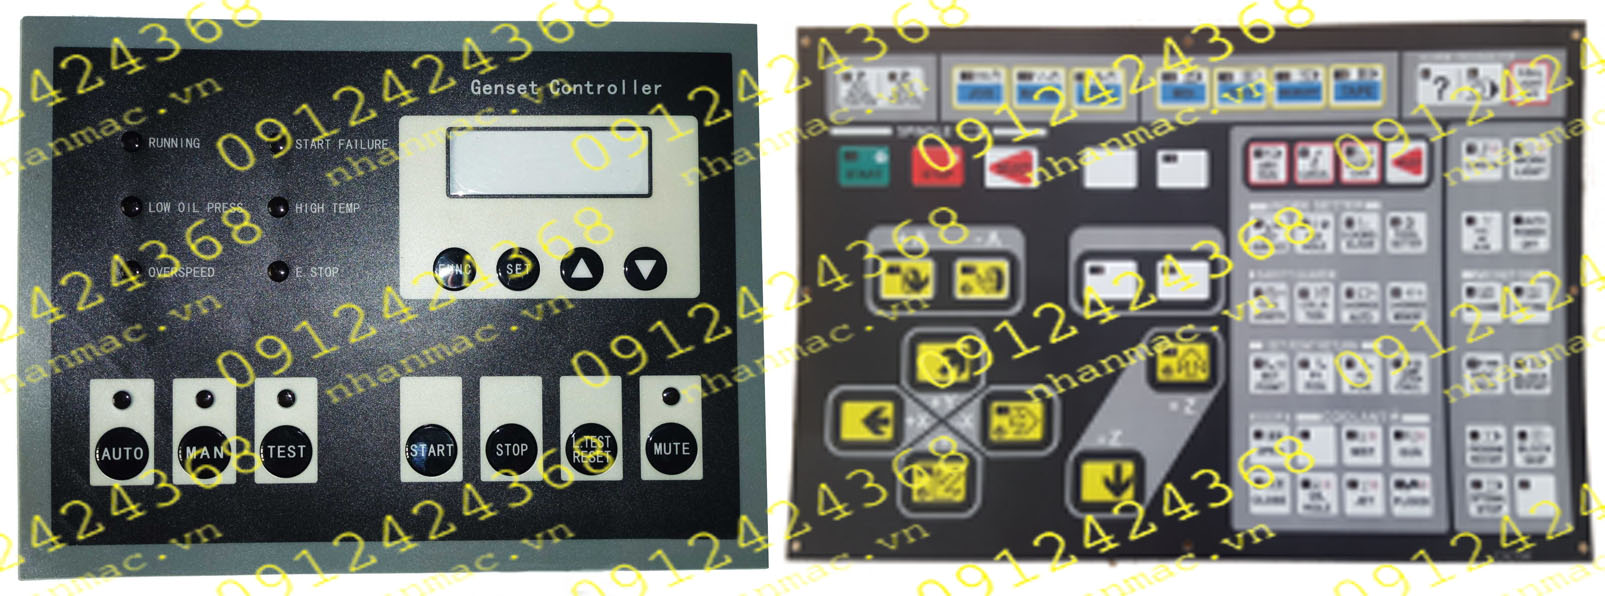 MD14- Miếng dán nhấn nút nổi làm tấm che mặt bàn phím bảng điều khiển được sử dụng làm phím bấm mềm bộ trung tâm điều khiển trong lĩnh vực Máy nông nghiệp